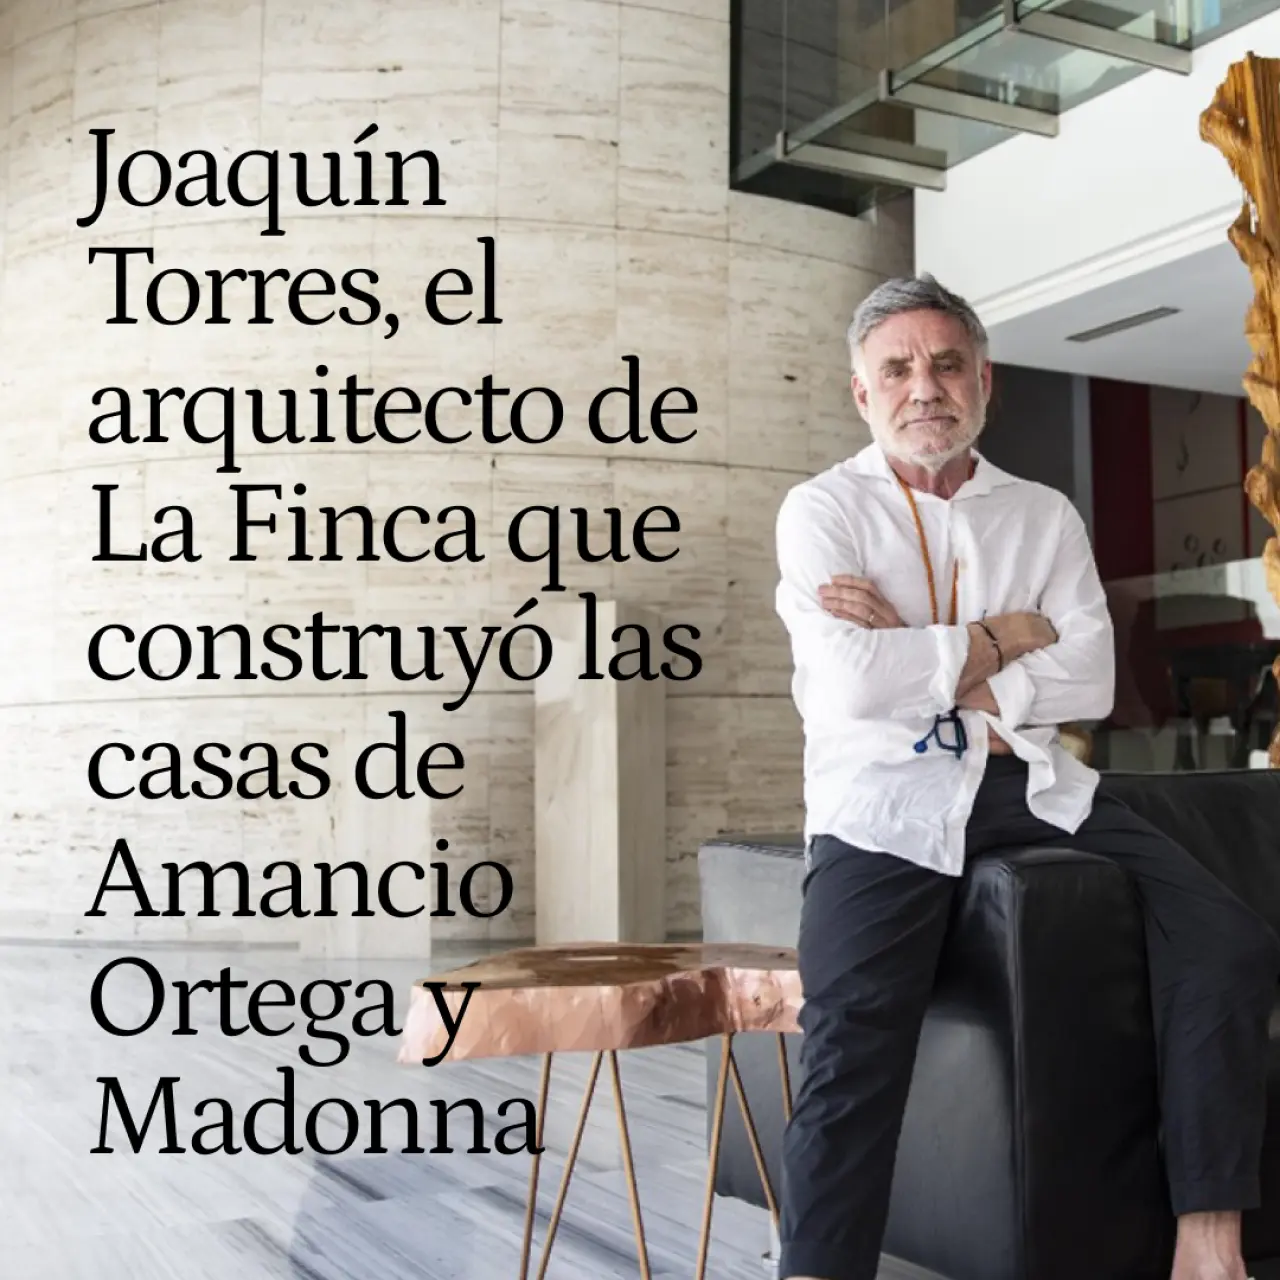 Joaquín Torres, el arquitecto de La Finca que construyó las casas de Amancio Ortega y Madonna: "En España los ricos son cutres"